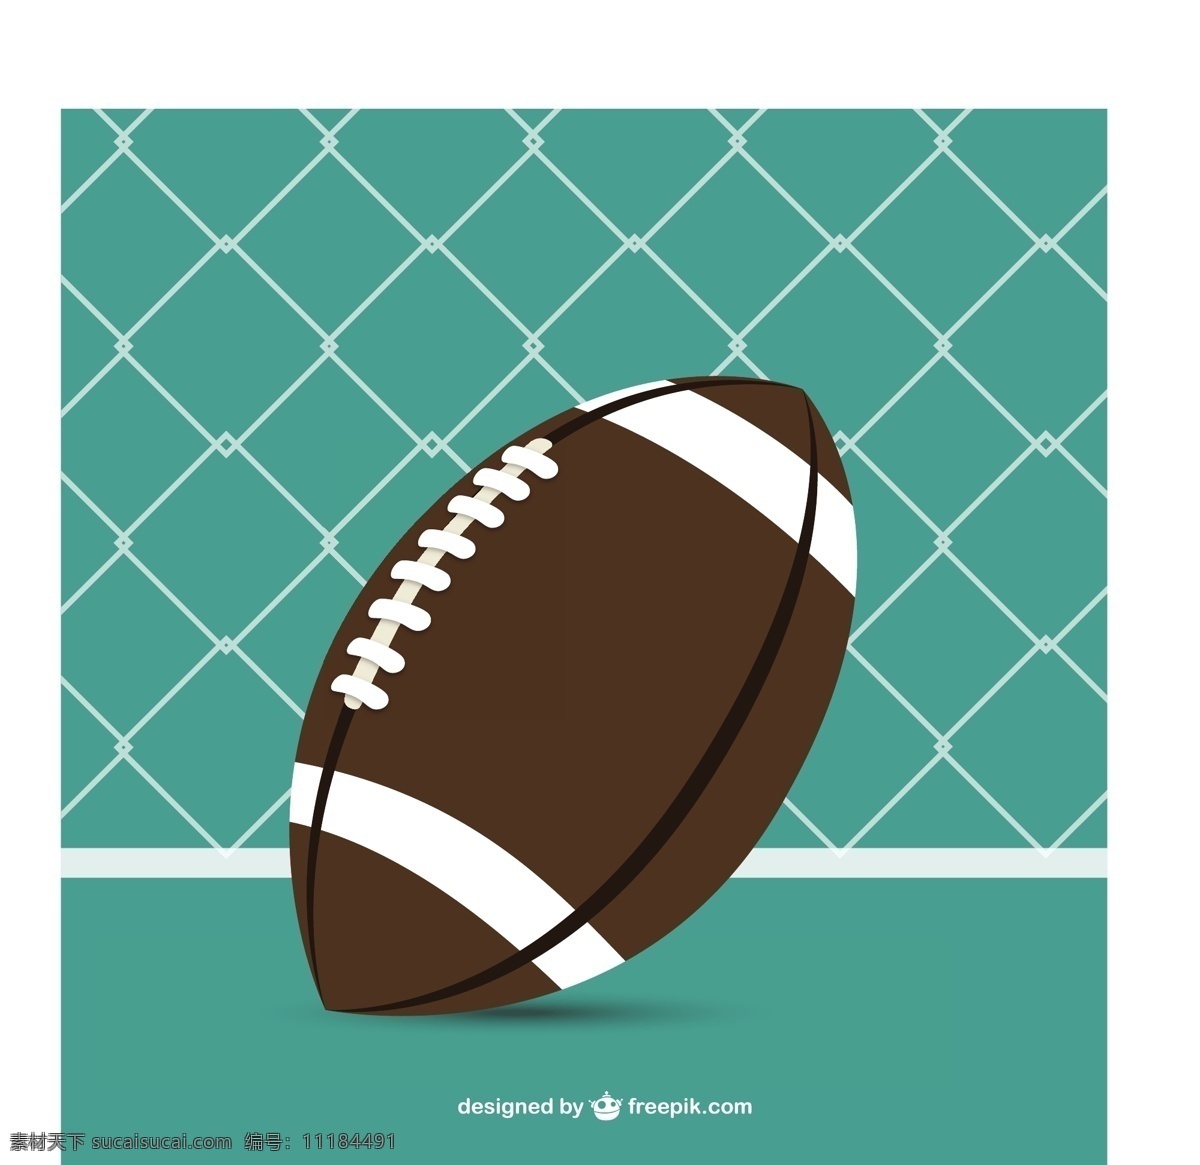 美式足球背景 背景 抽象 运动 模板 足球 壁纸 游戏 球 娱乐 插图 美国 美国足球 目标 青色 天蓝色